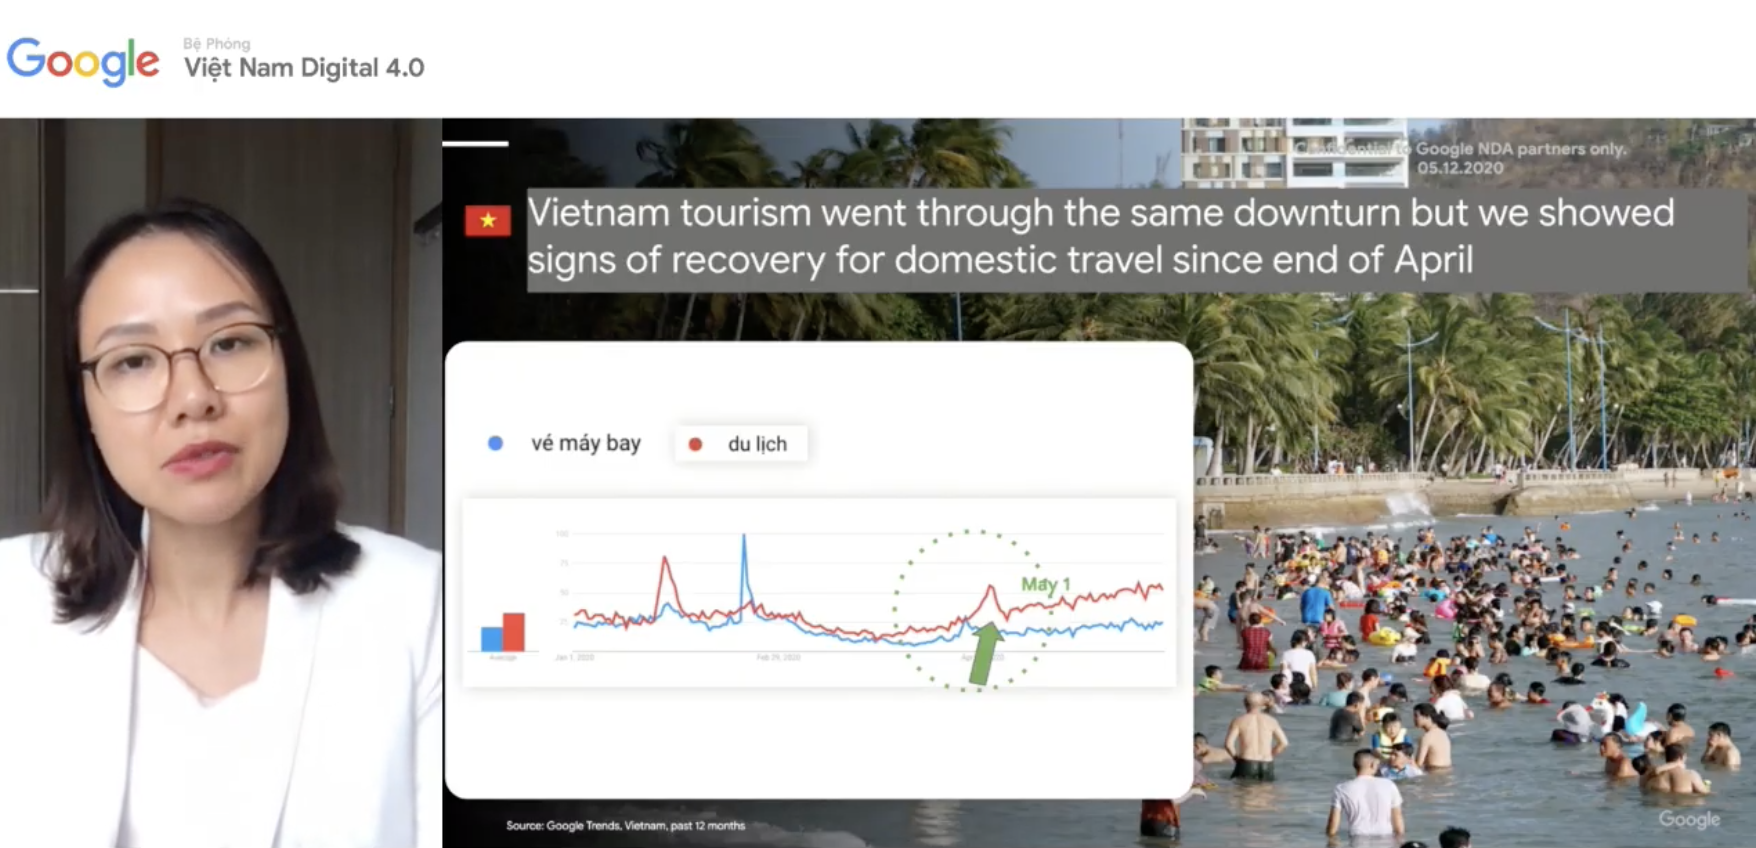 Các từ khoá du lịch biển tại Việt Nam trên Google tăng gấp 2 lần so với trước đại dịch: Top 10 tìm kiếm không thấy Đà Nẵng - Ảnh 2.